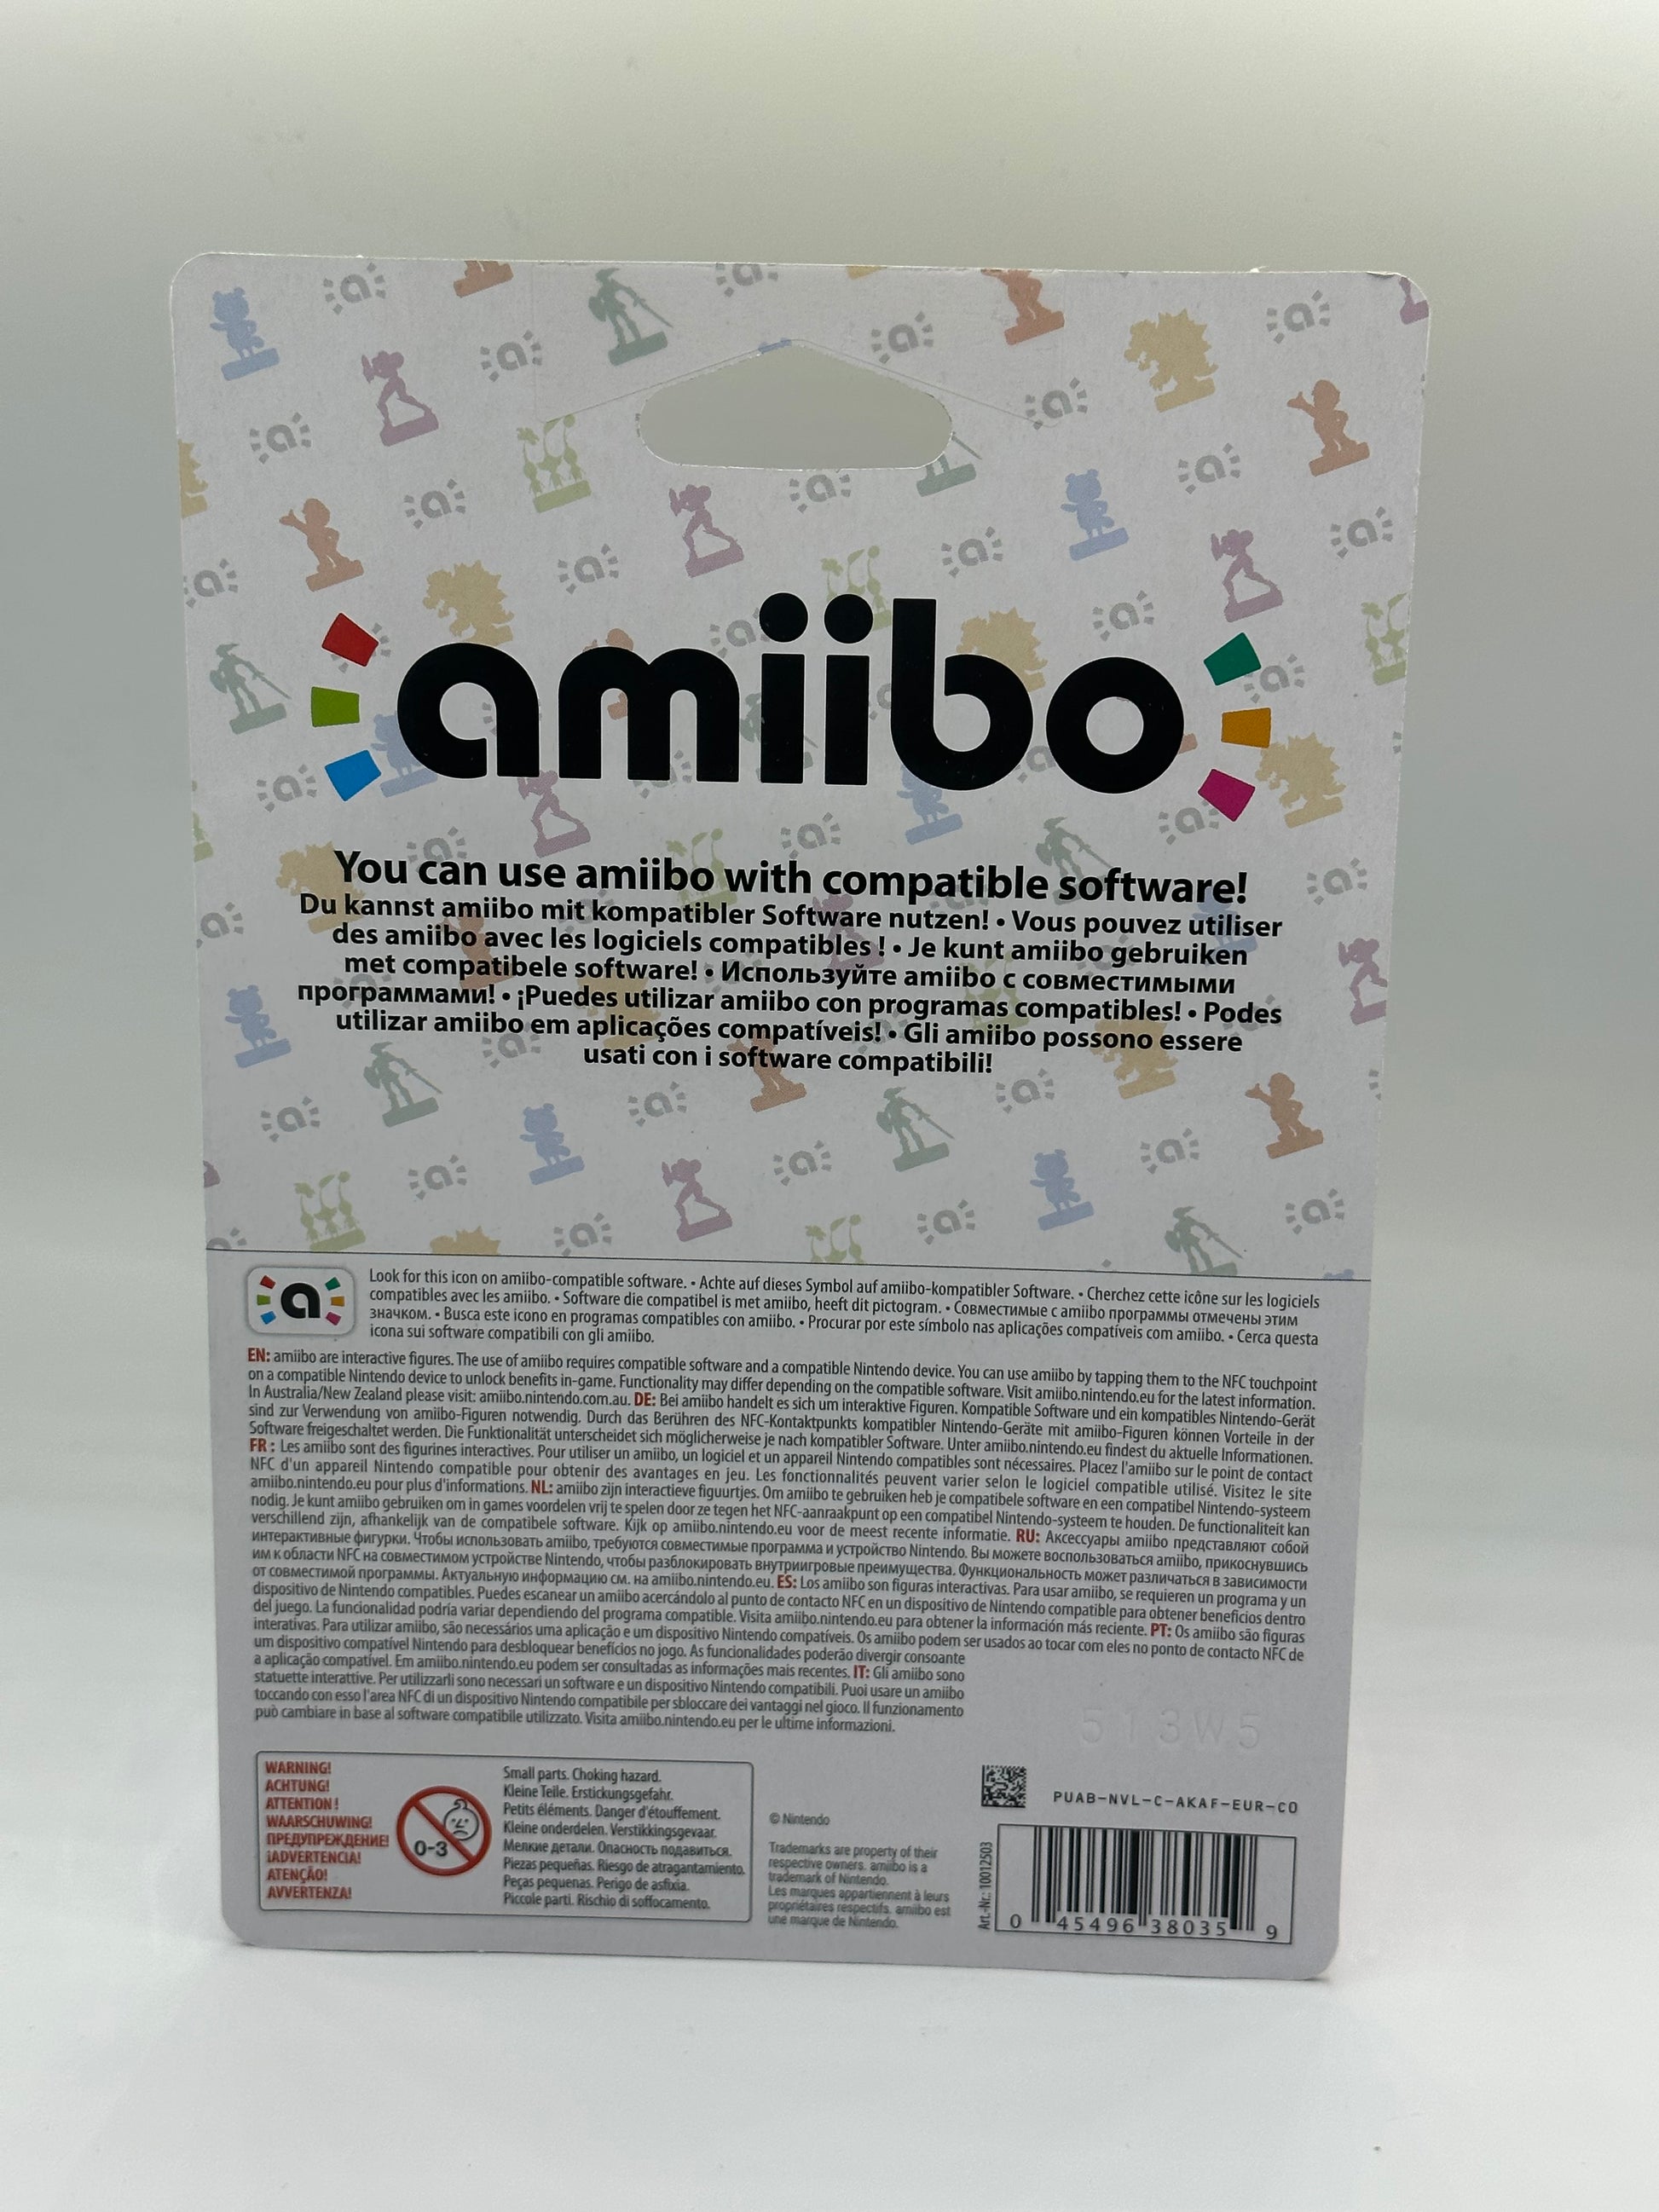 amiibo 8 Bit Link Legend Of Zelda